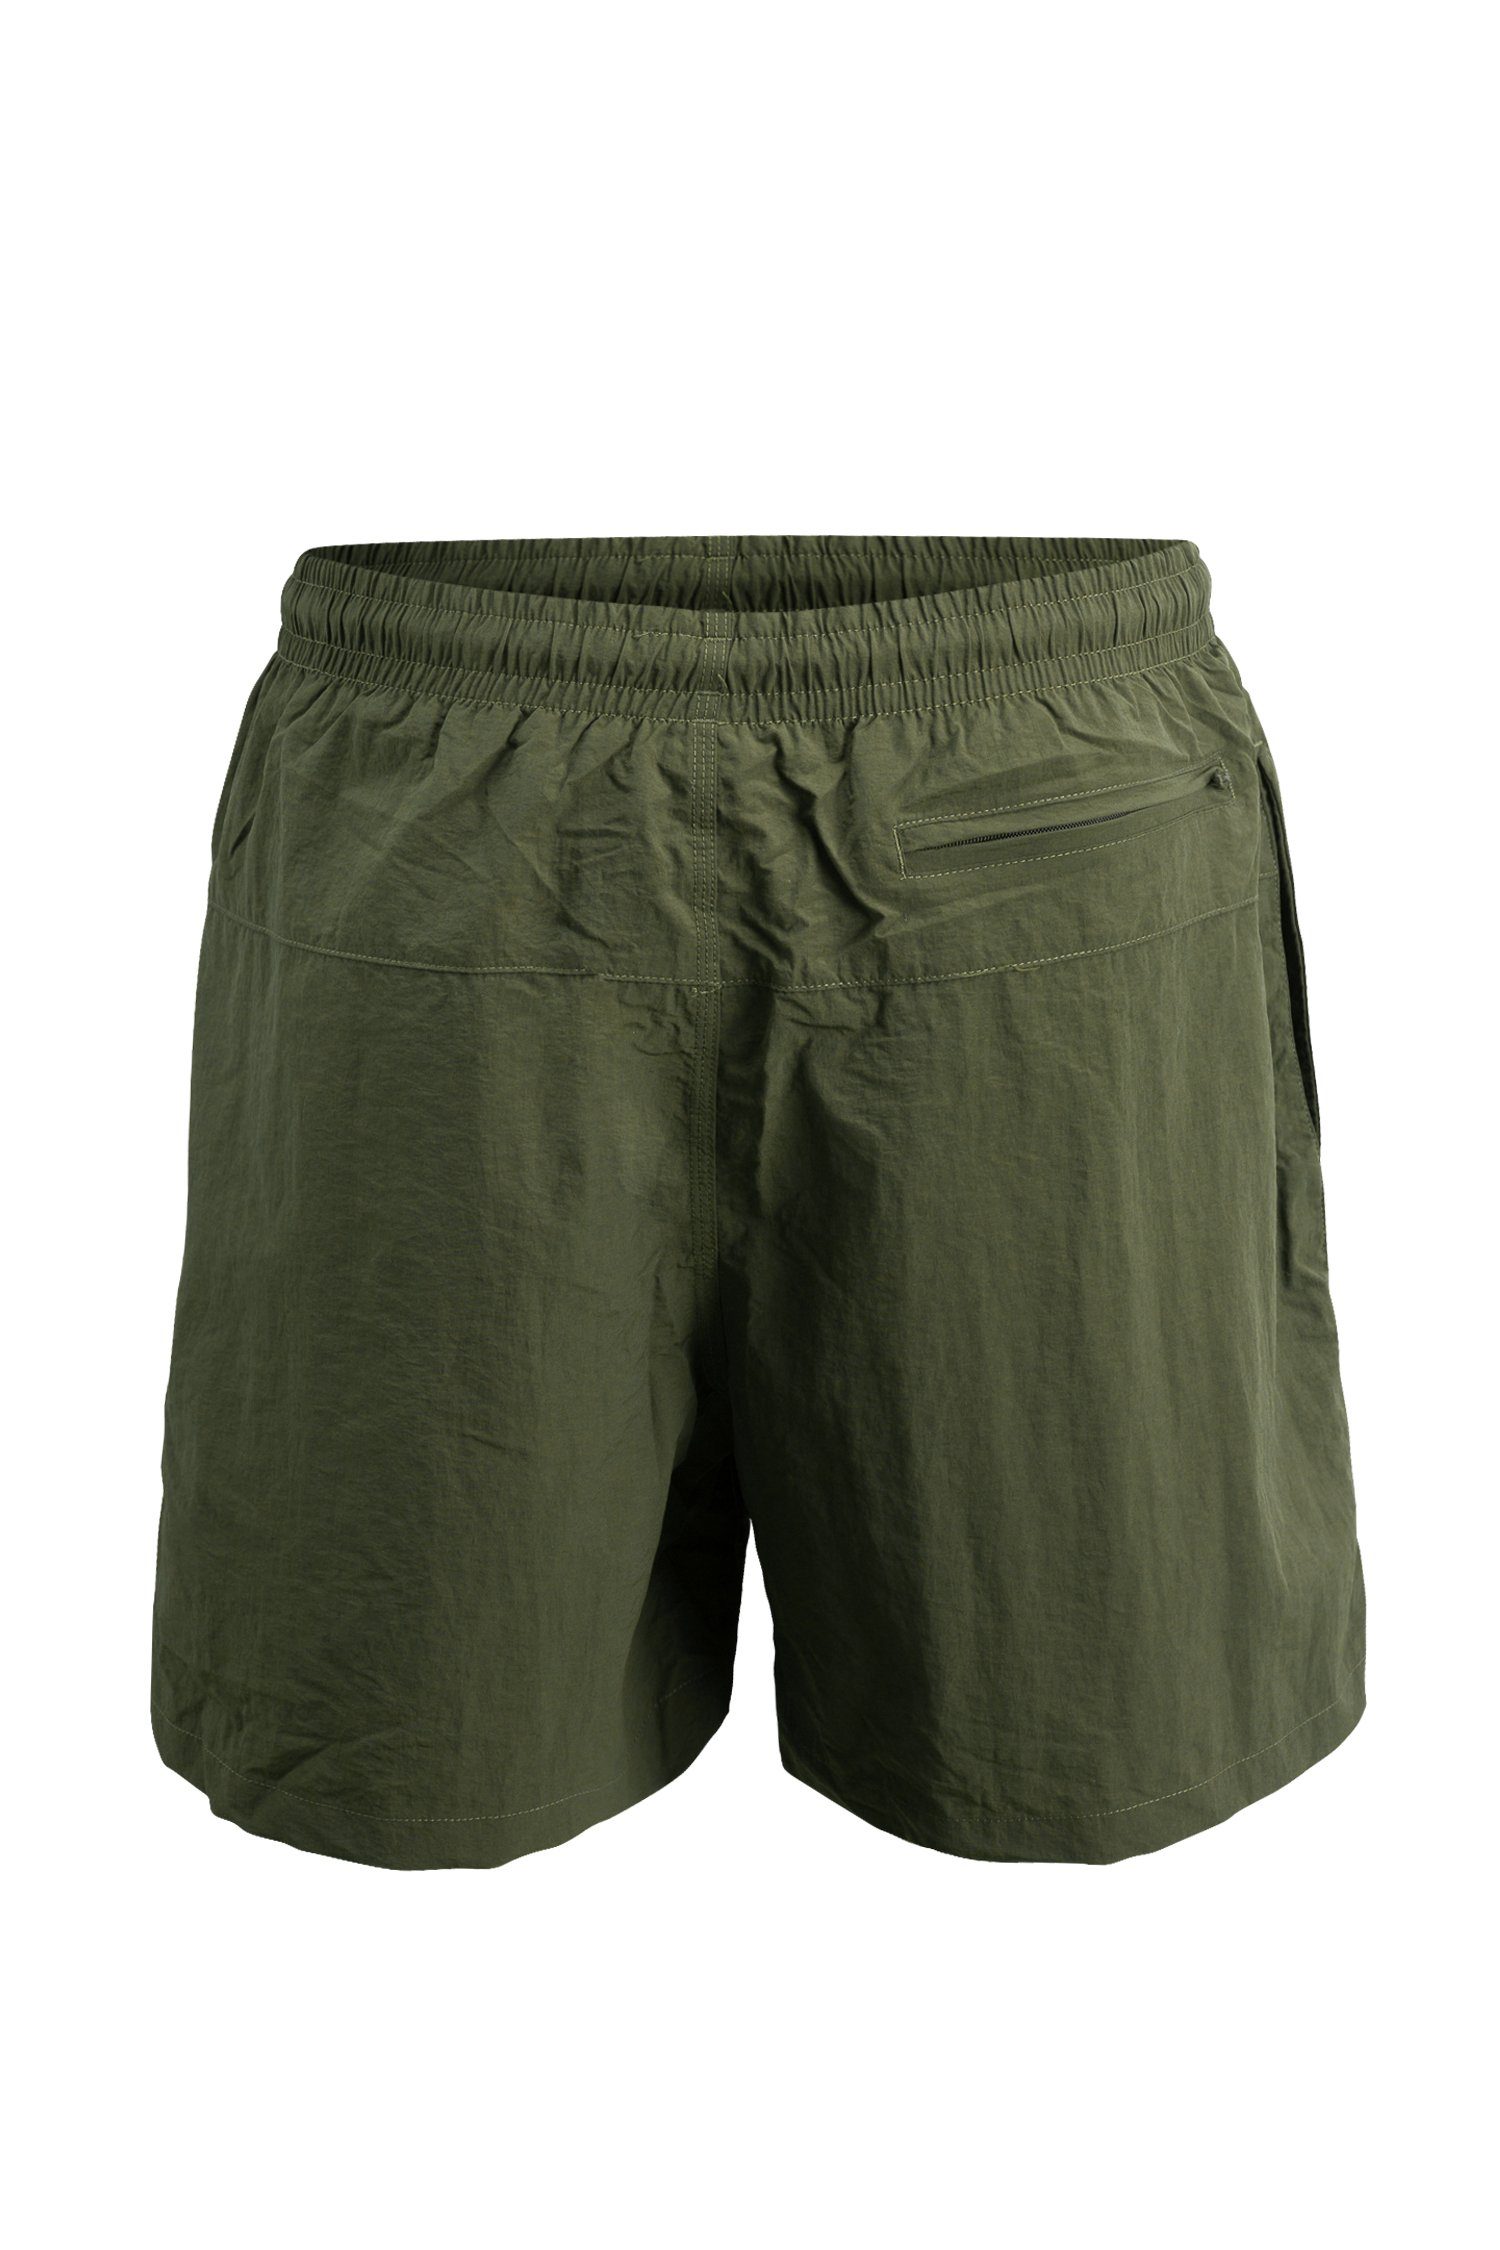 Badeshorts schnelltrocknend Manufaktur13 Olive/Khaki - Swim Badehosen Shorts